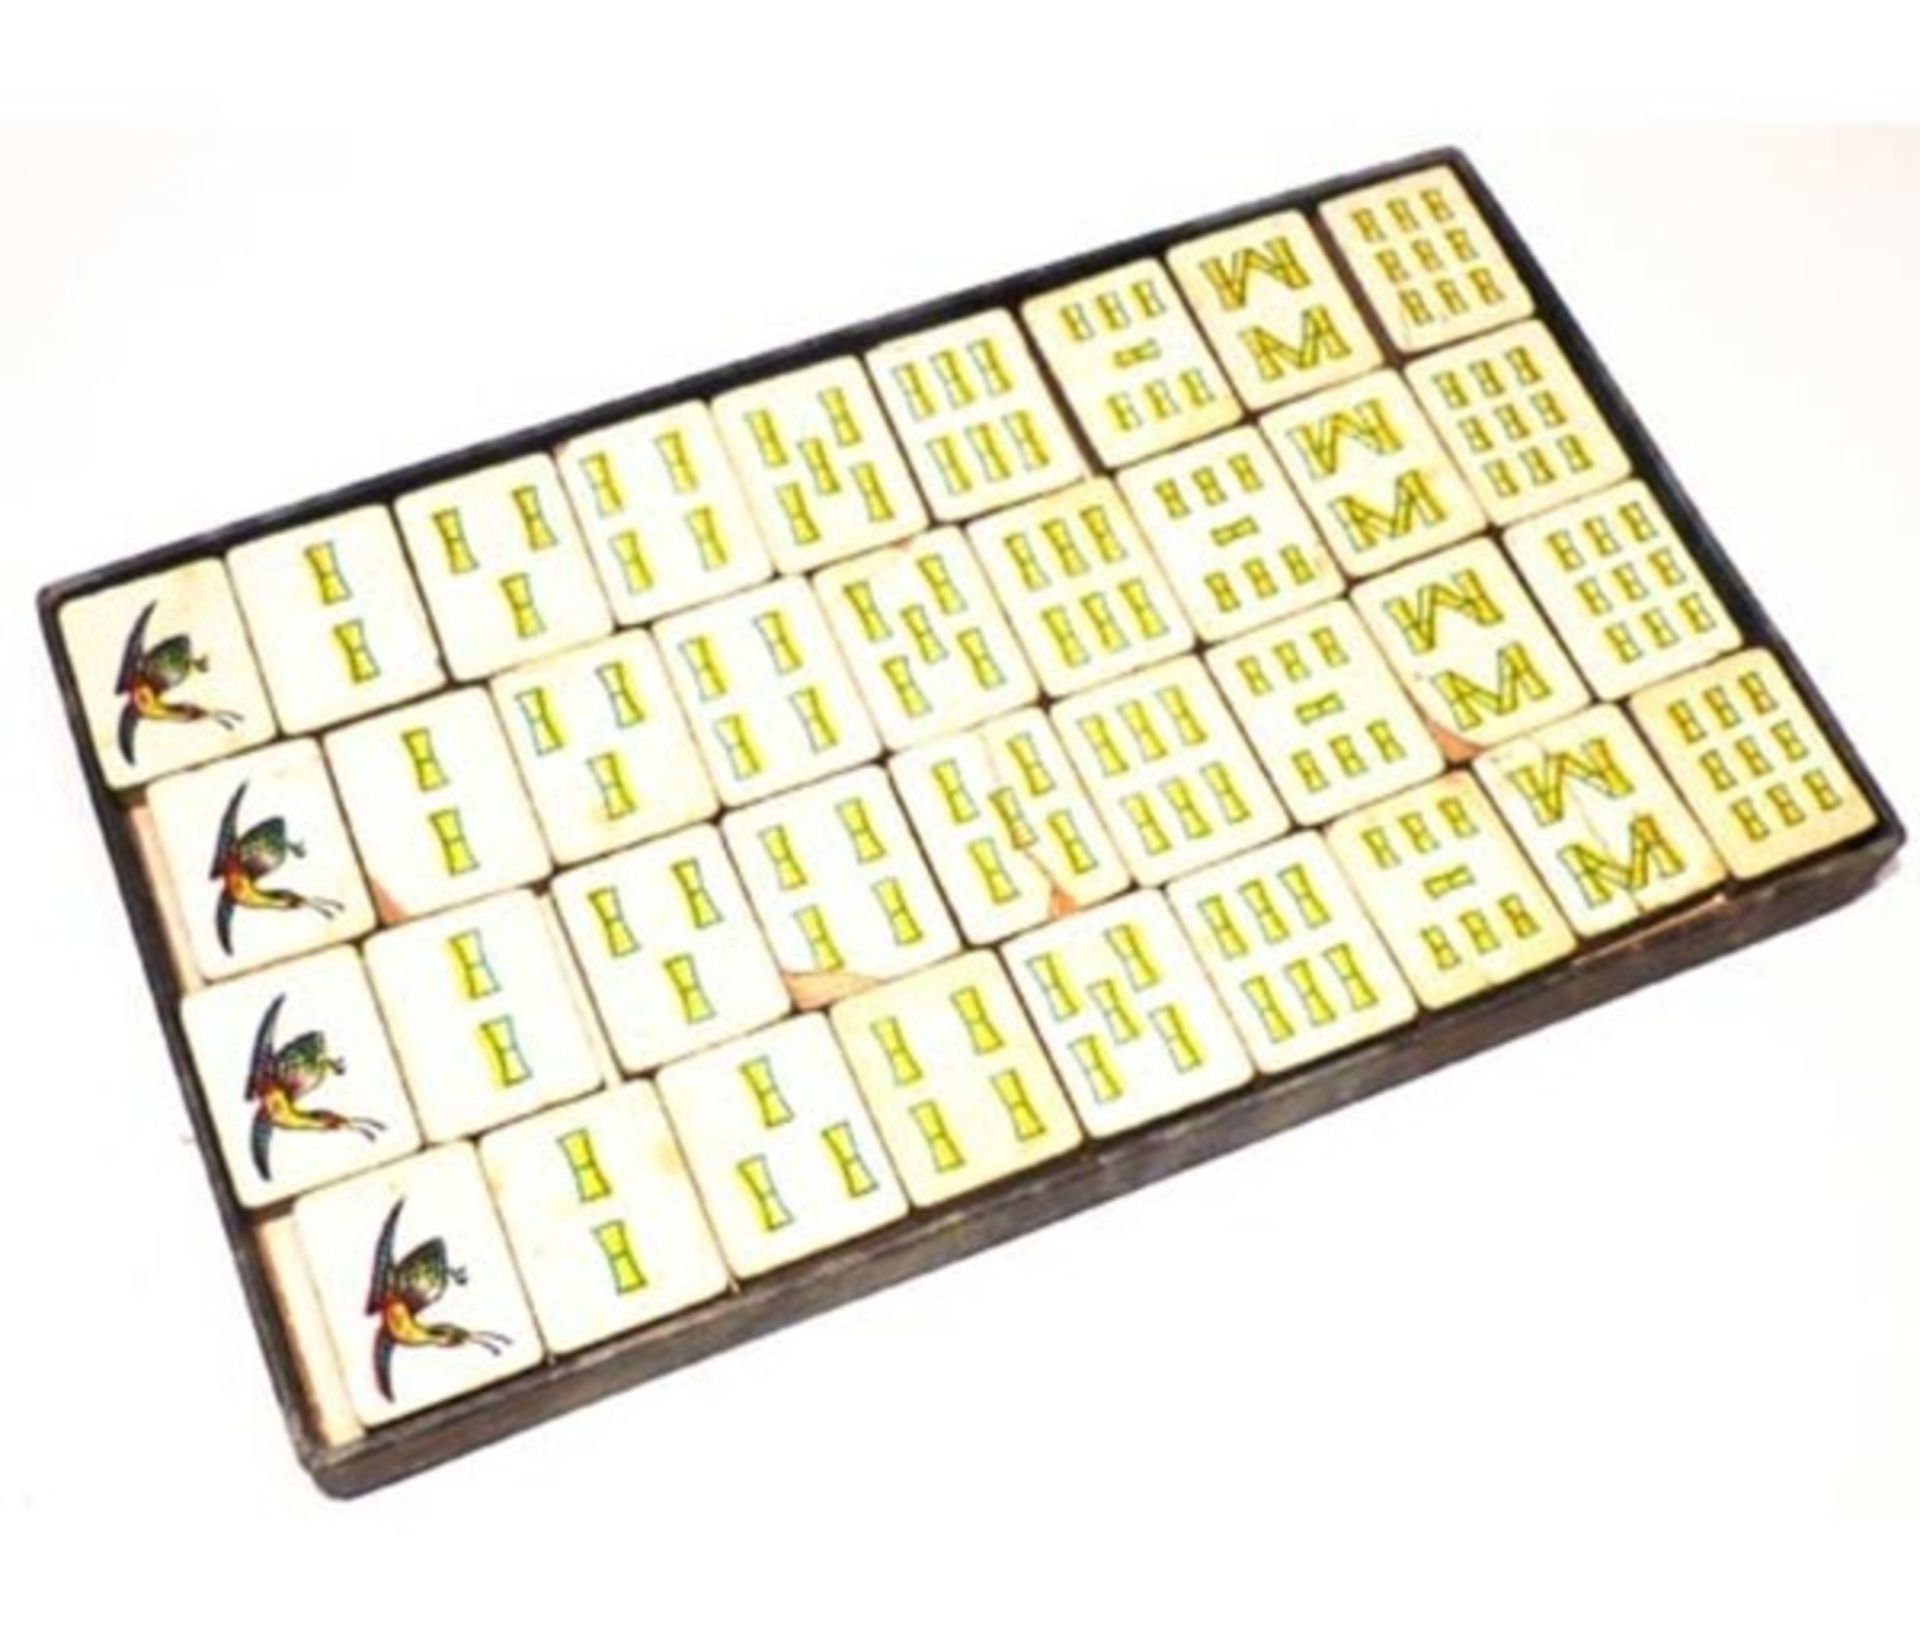 (Mahjong) Mahjong Europees, De Sala Spelen met het Rode zegel, ca. 1930 - Bild 13 aus 16